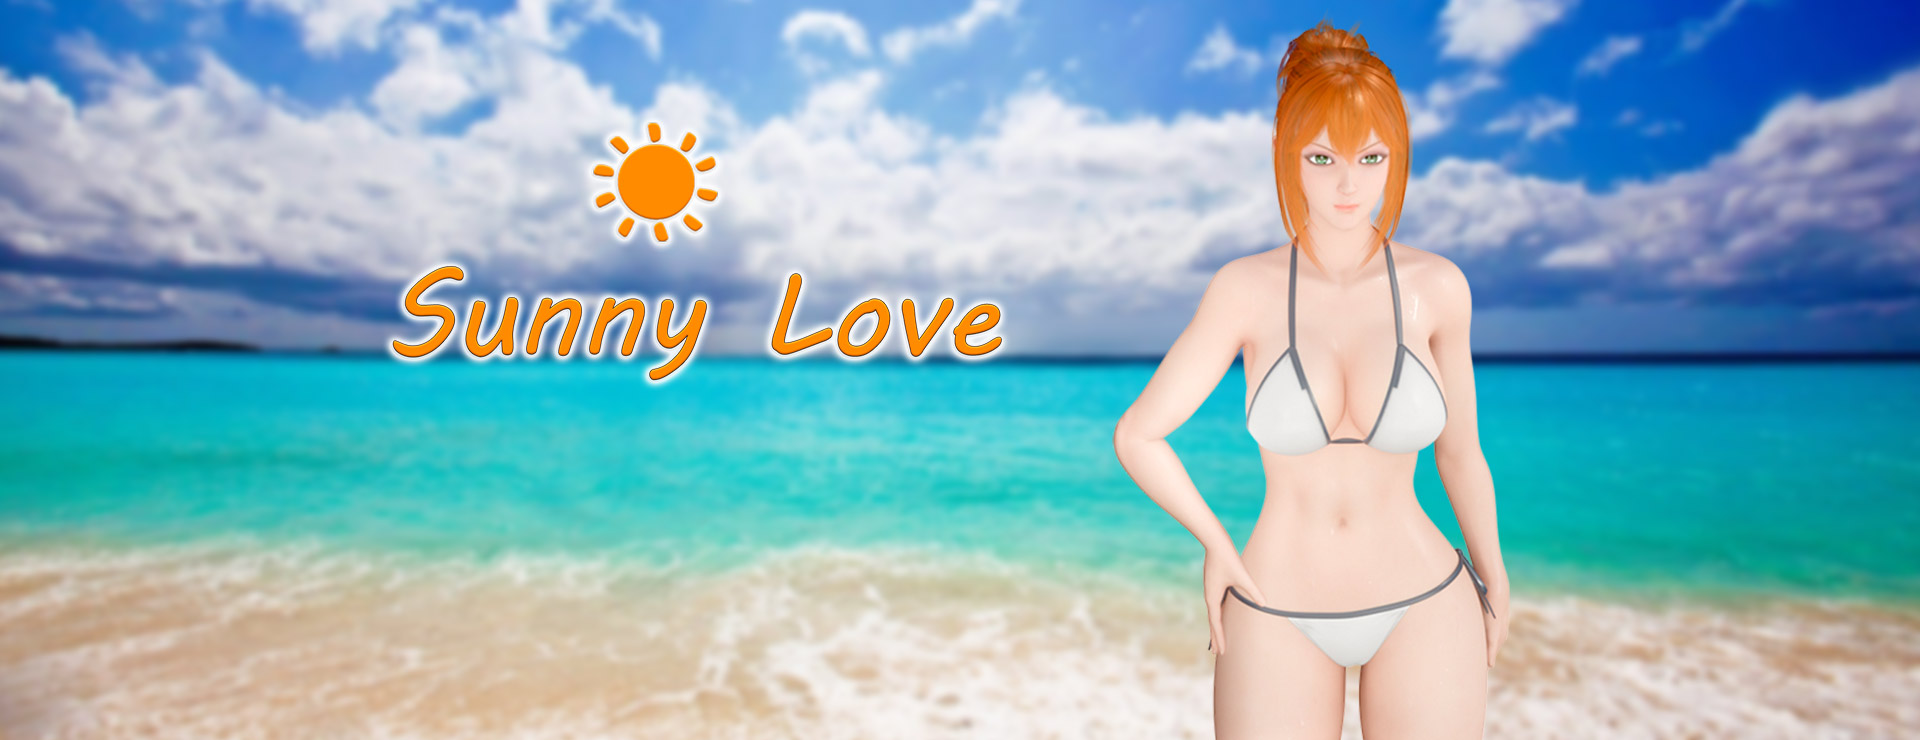 Sunny Love - Powieść wizualna Gra